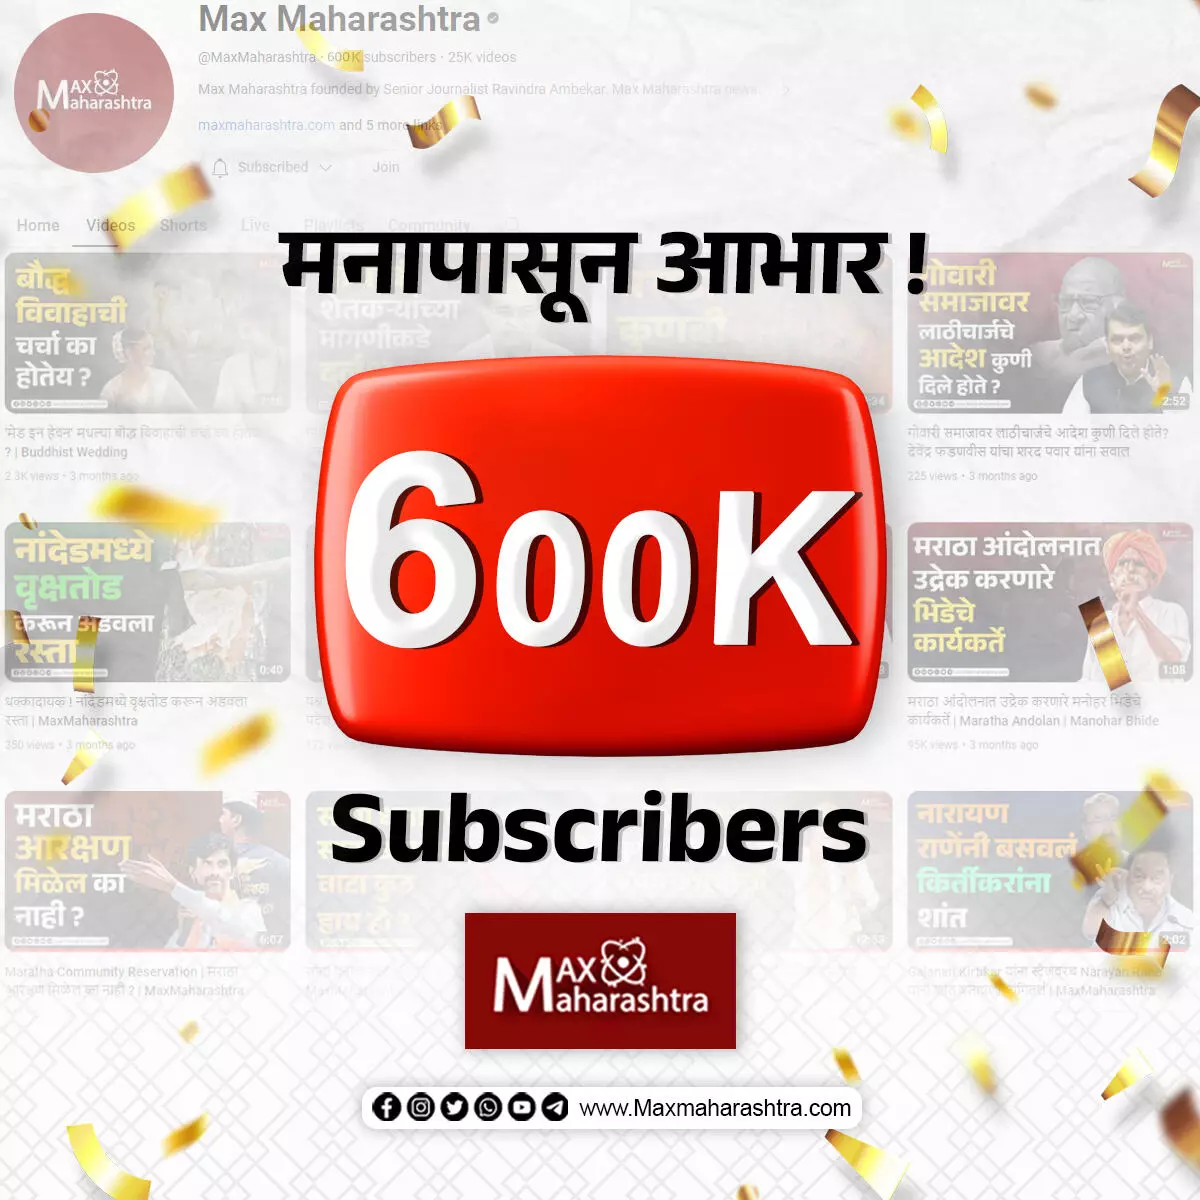 मॅक्स महाराष्ट्रच्या युट्युब चॅनलचा ६ लाख सब्सक्राइब आणि १५ कोटी दर्शकांचा टप्पा पार